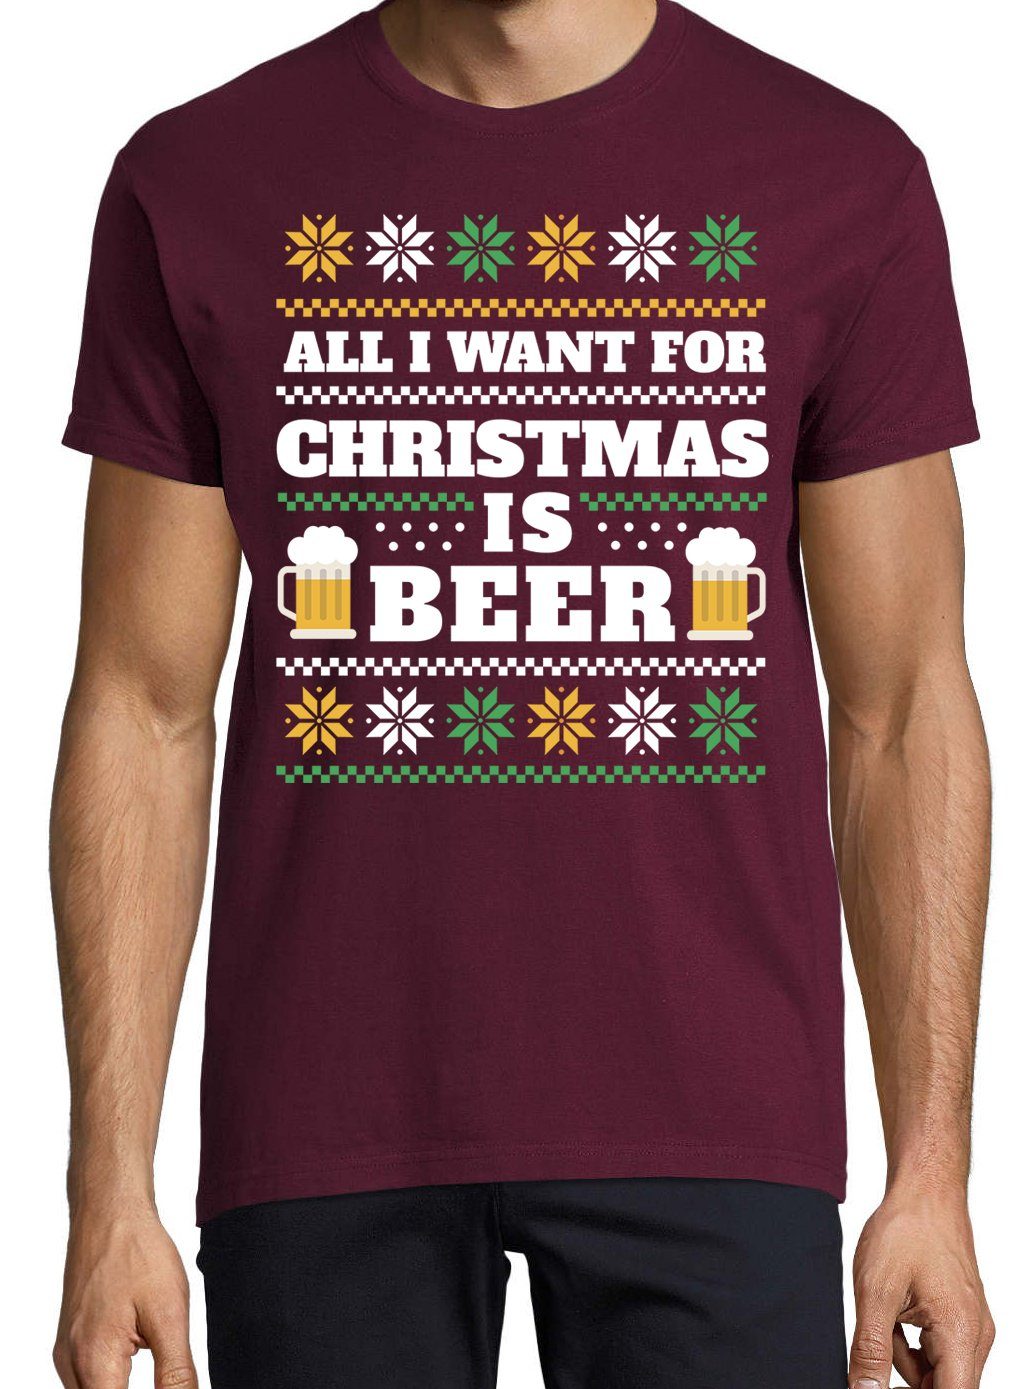 Print-Shirt Youth Spruch WANT IS I CHRISTMAS Weihnachten lustigem ALL Herren Designz BEER mit & Bier Burgund FOR T-Shirt